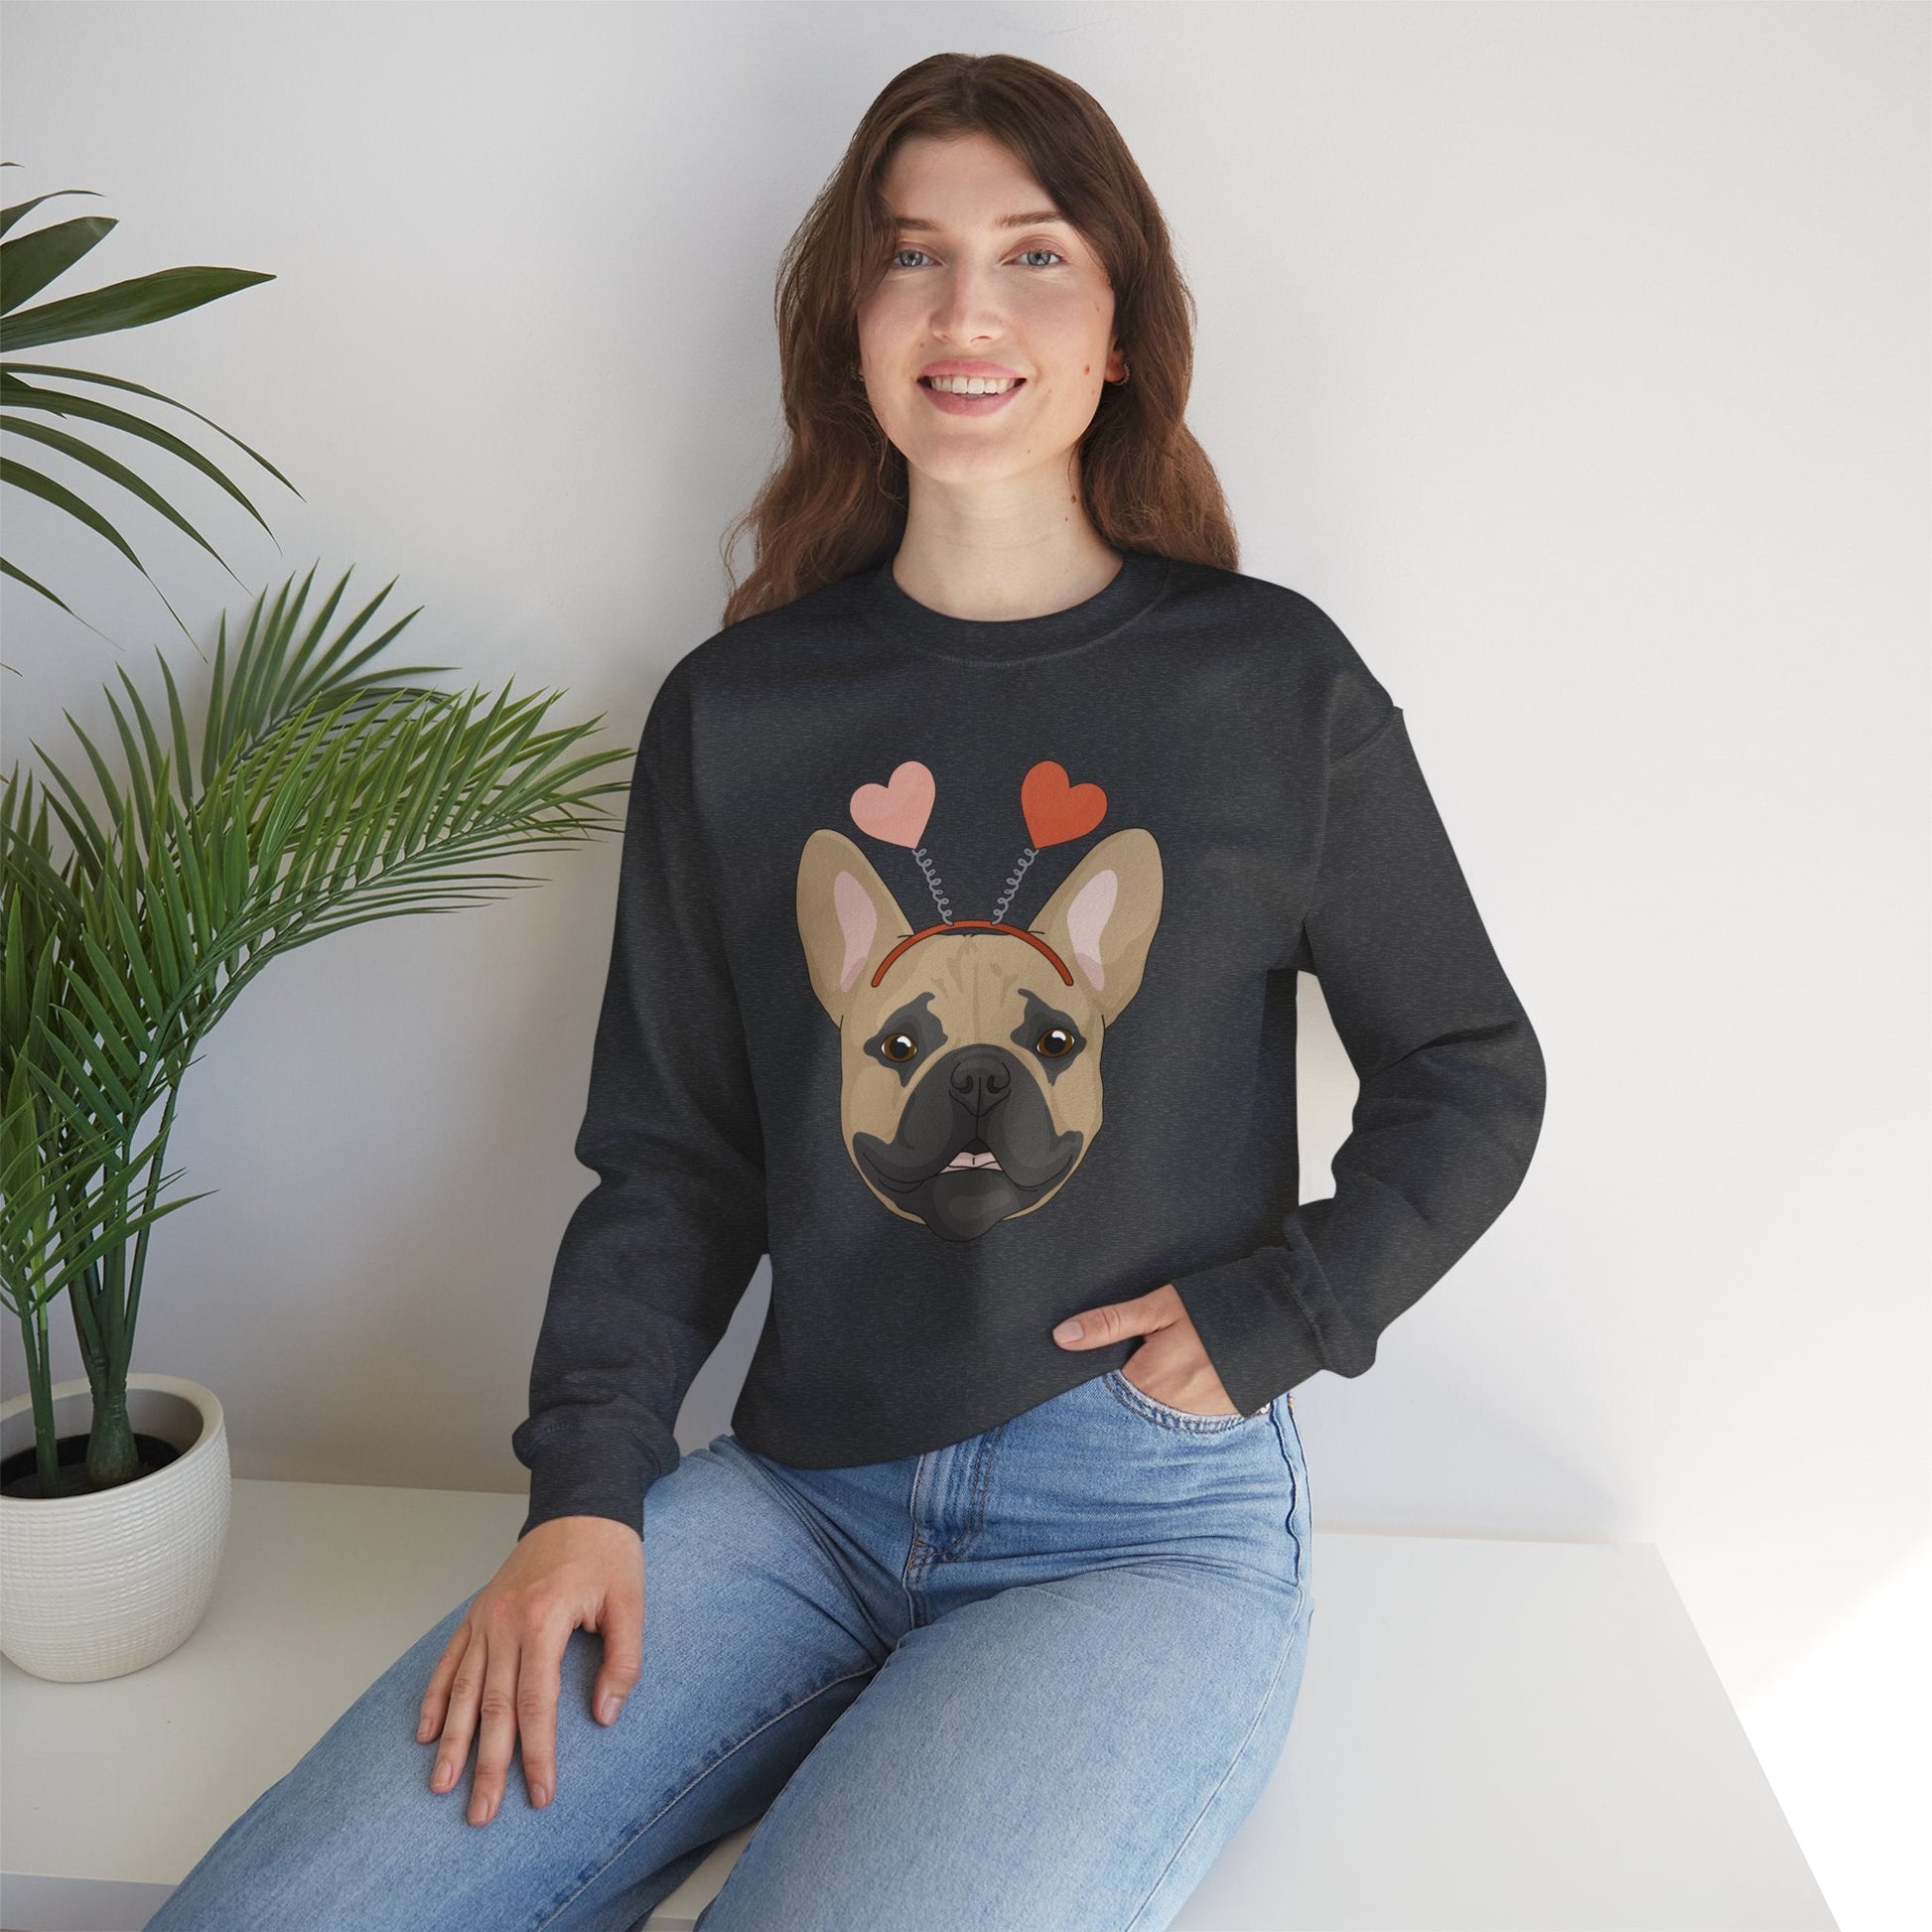 A Very Frenchie Valentine | Crewneck Sweatshirt - Detezi Designs-57886551450030121663